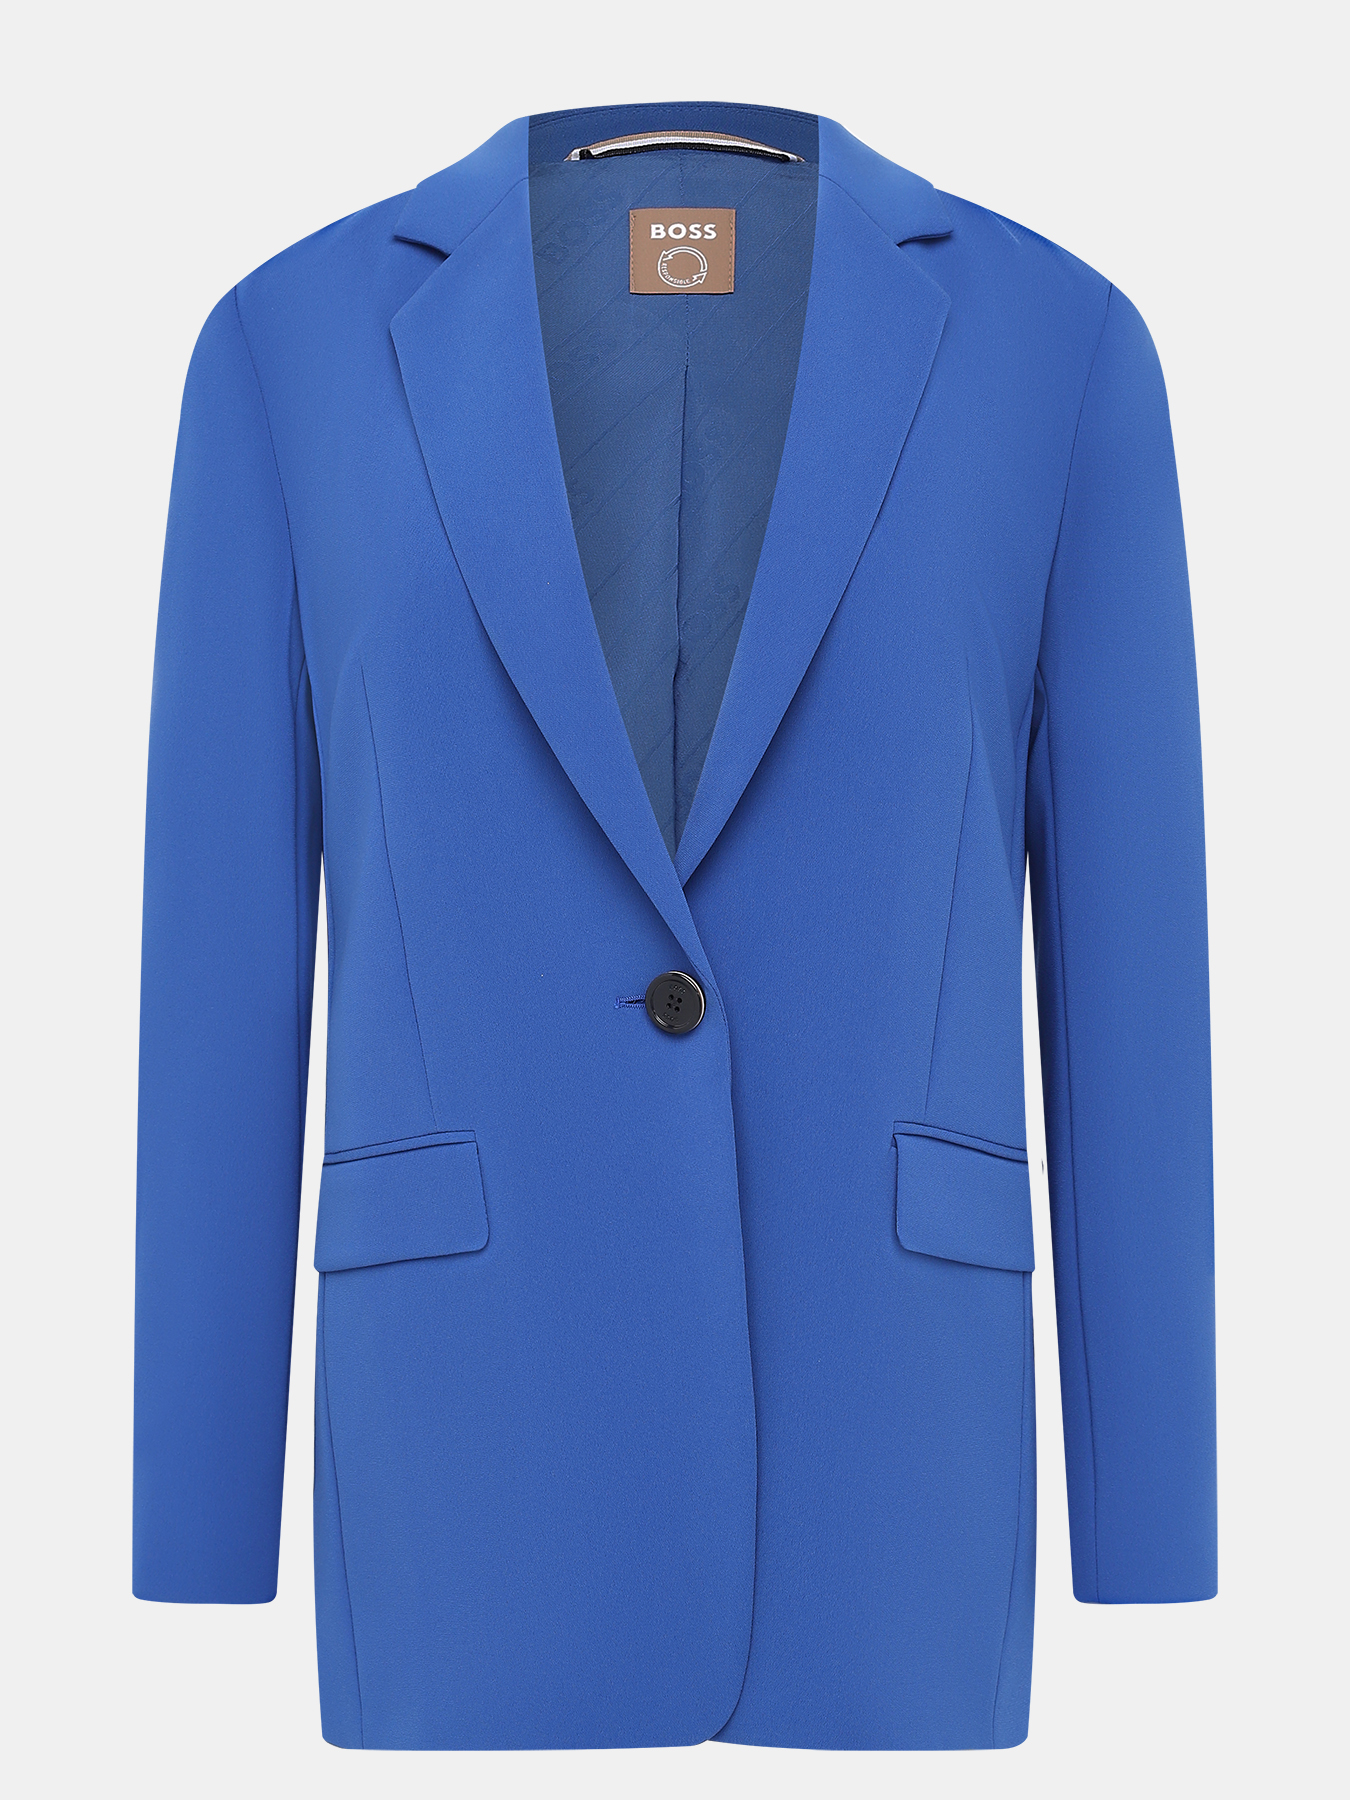 Пиджак Jocalua BOSS 420533-020, цвет синий, размер 44